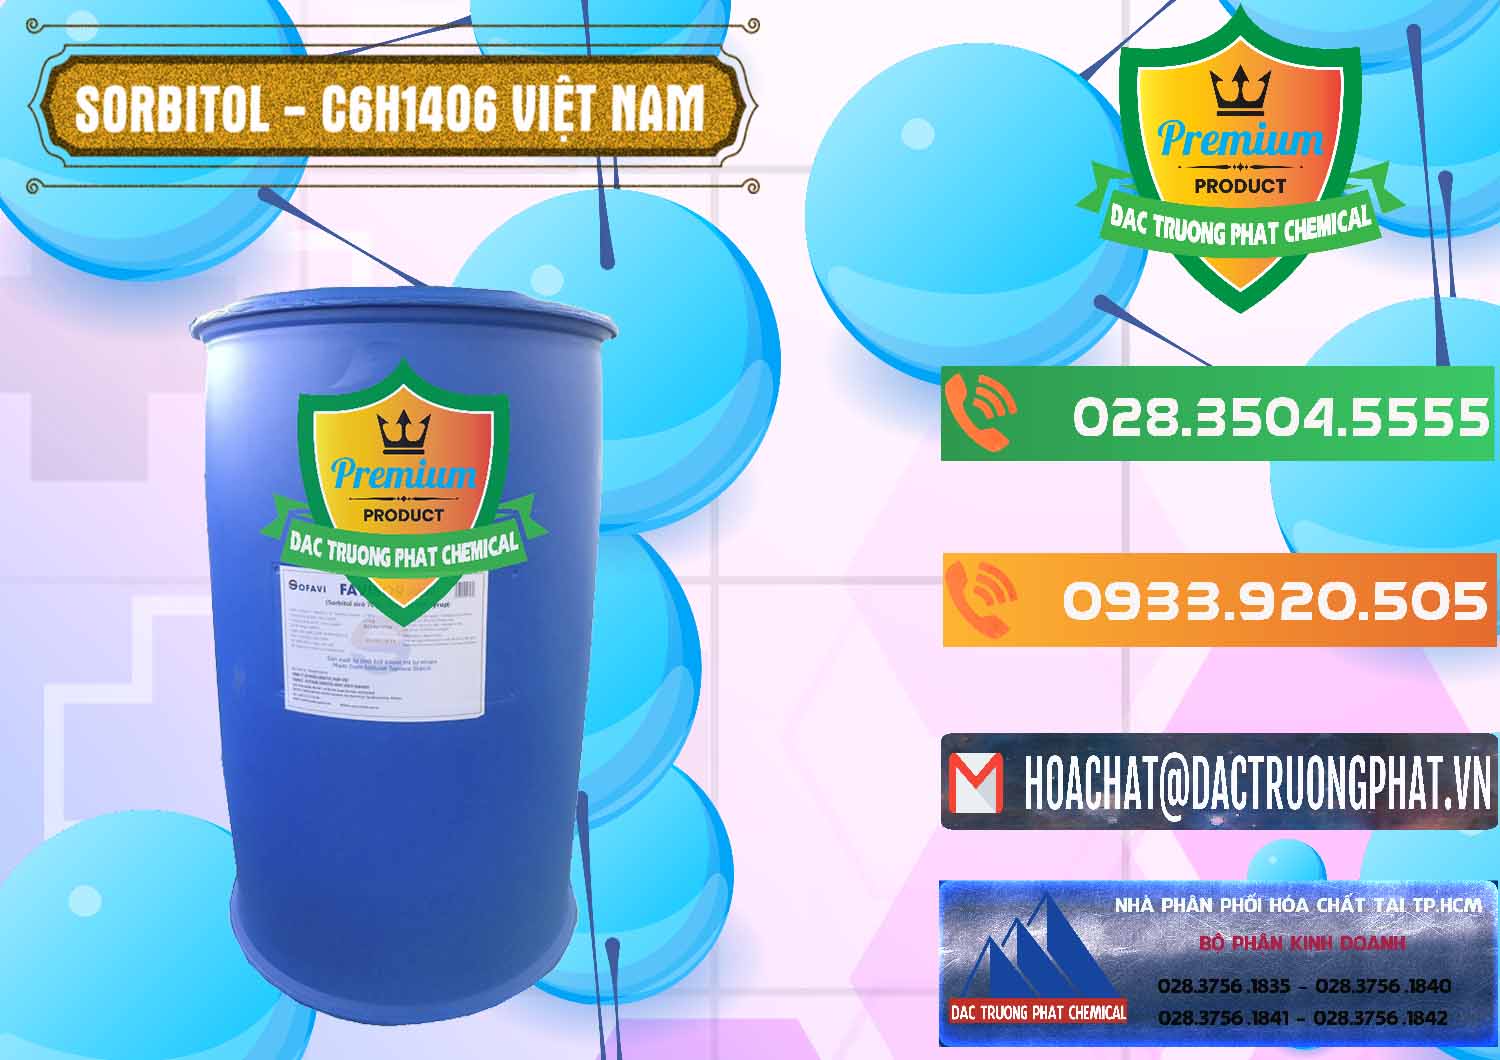 Công ty phân phối _ bán Sorbitol - C6H14O6 Lỏng 70% Food Grade Việt Nam - 0438 - Chuyên phân phối và cung ứng hóa chất tại TP.HCM - hoachatxulynuoc.com.vn